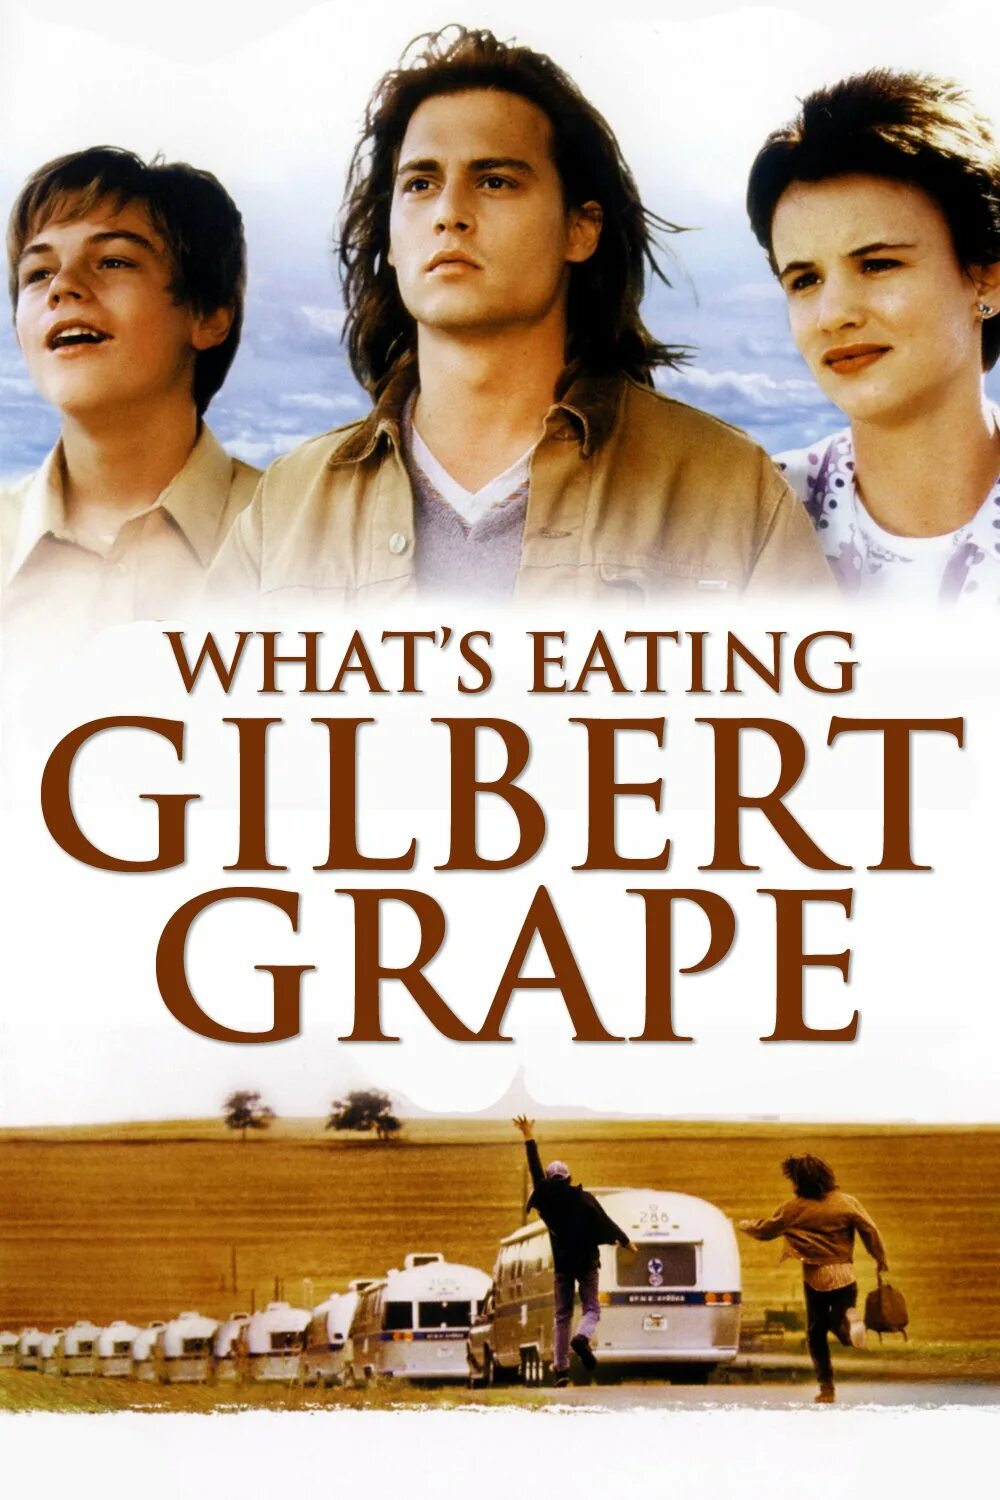 Что гложет Гилберта Грейпа? (1993). What's eating Gilbert grape 1993. Eating gilbert